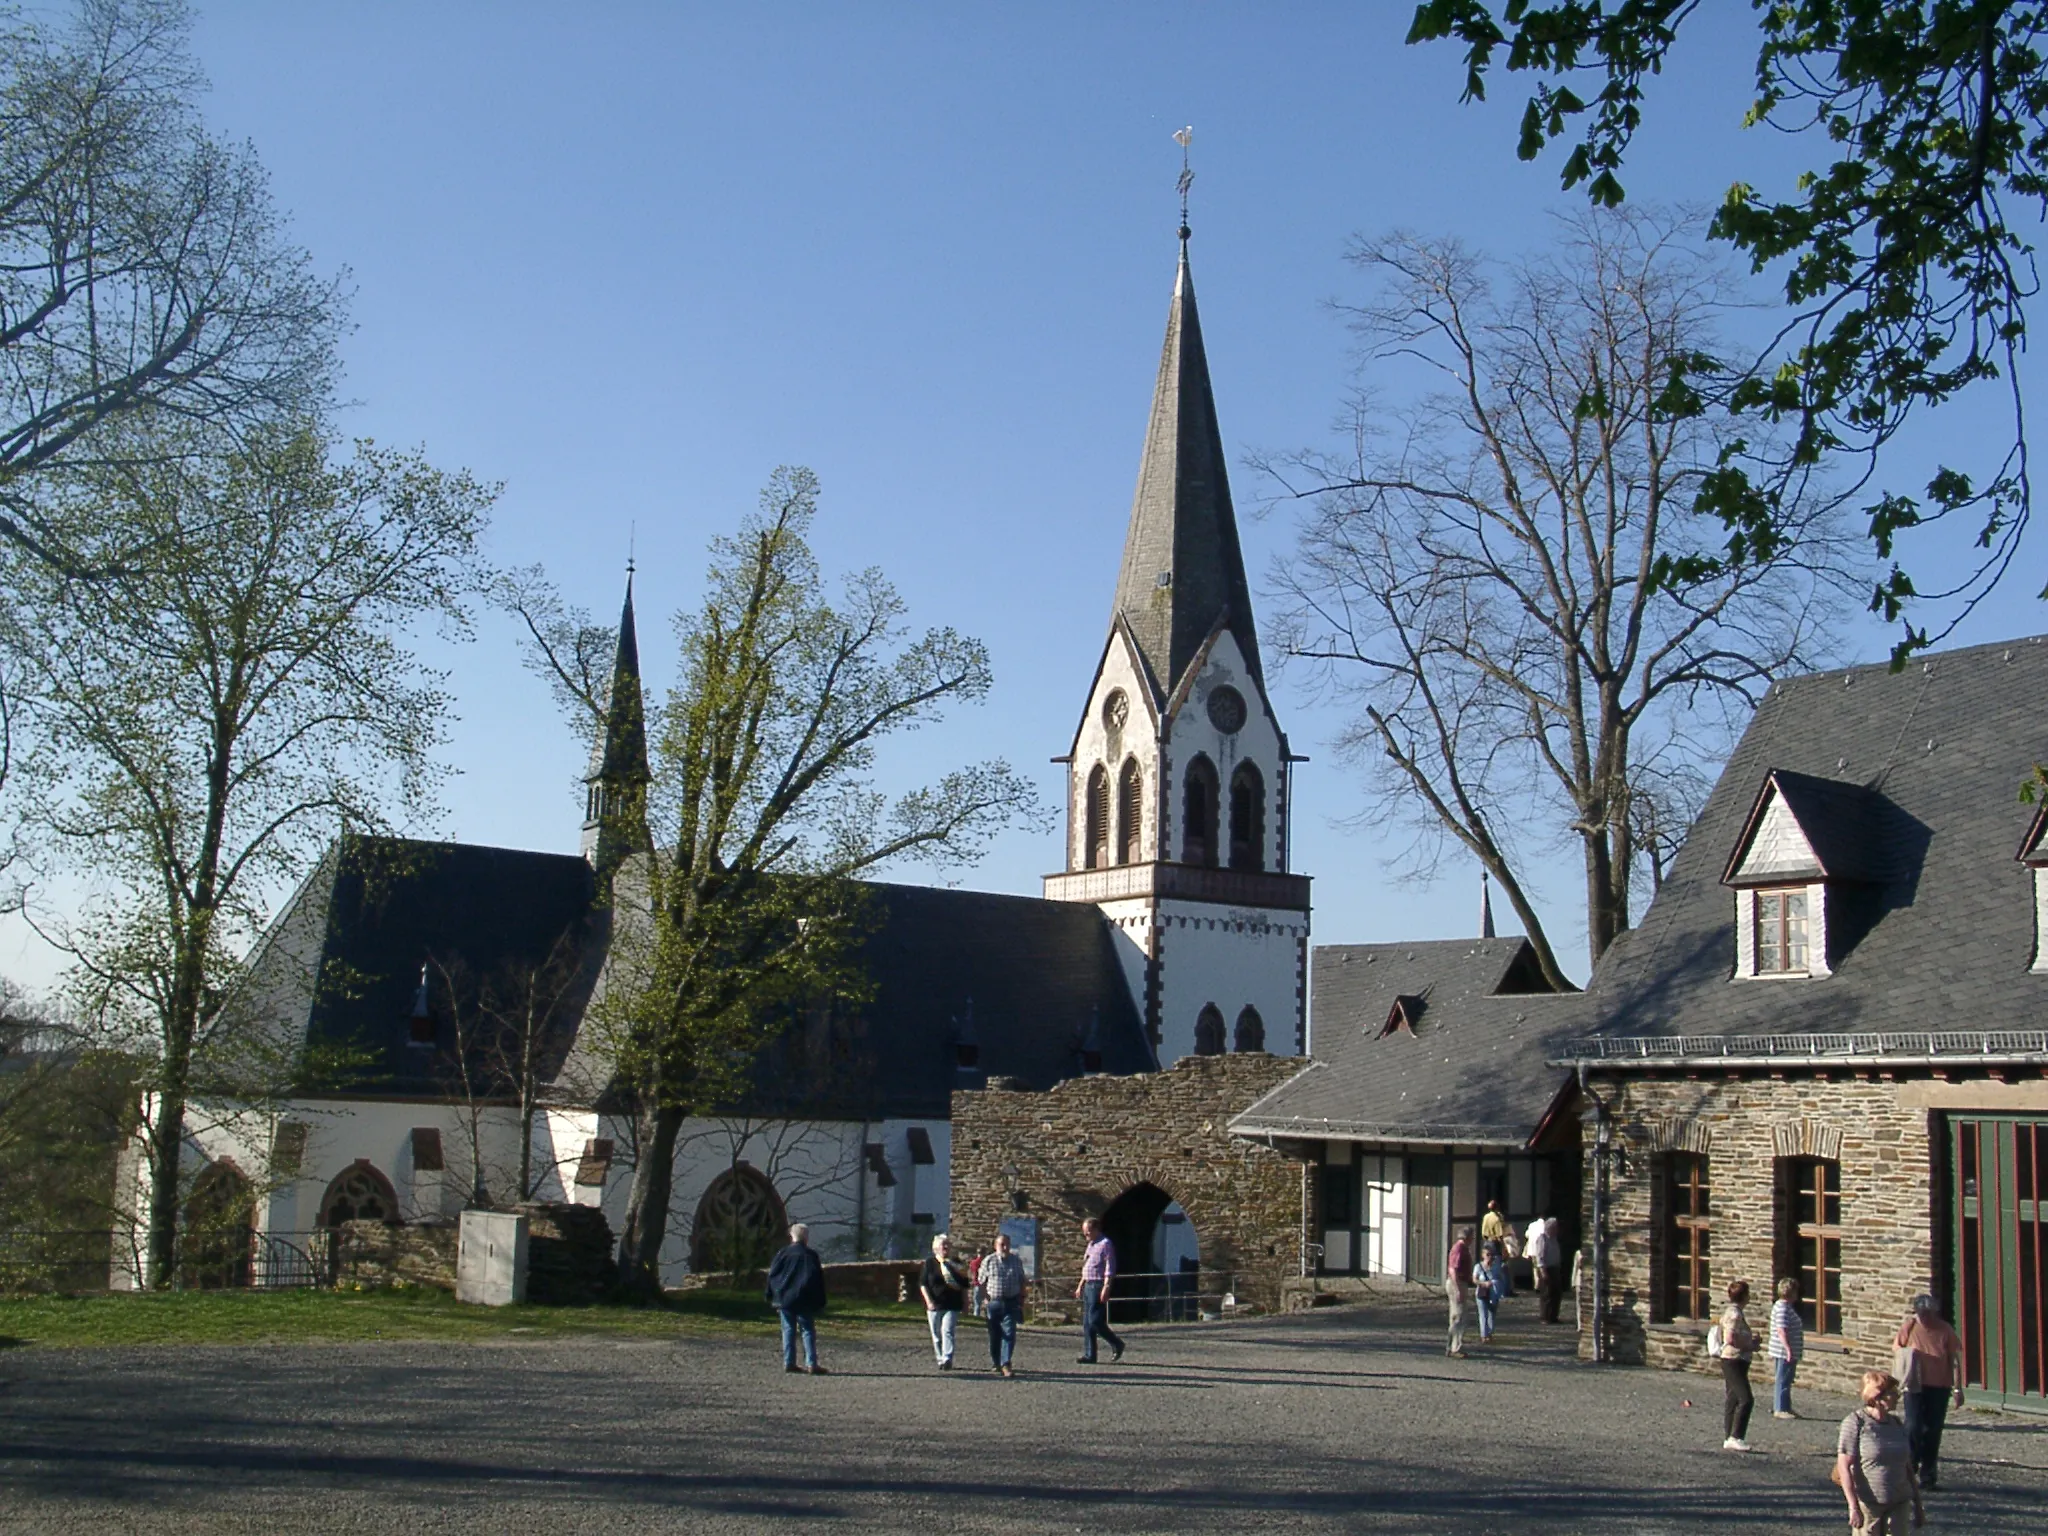 Image of Koblenz